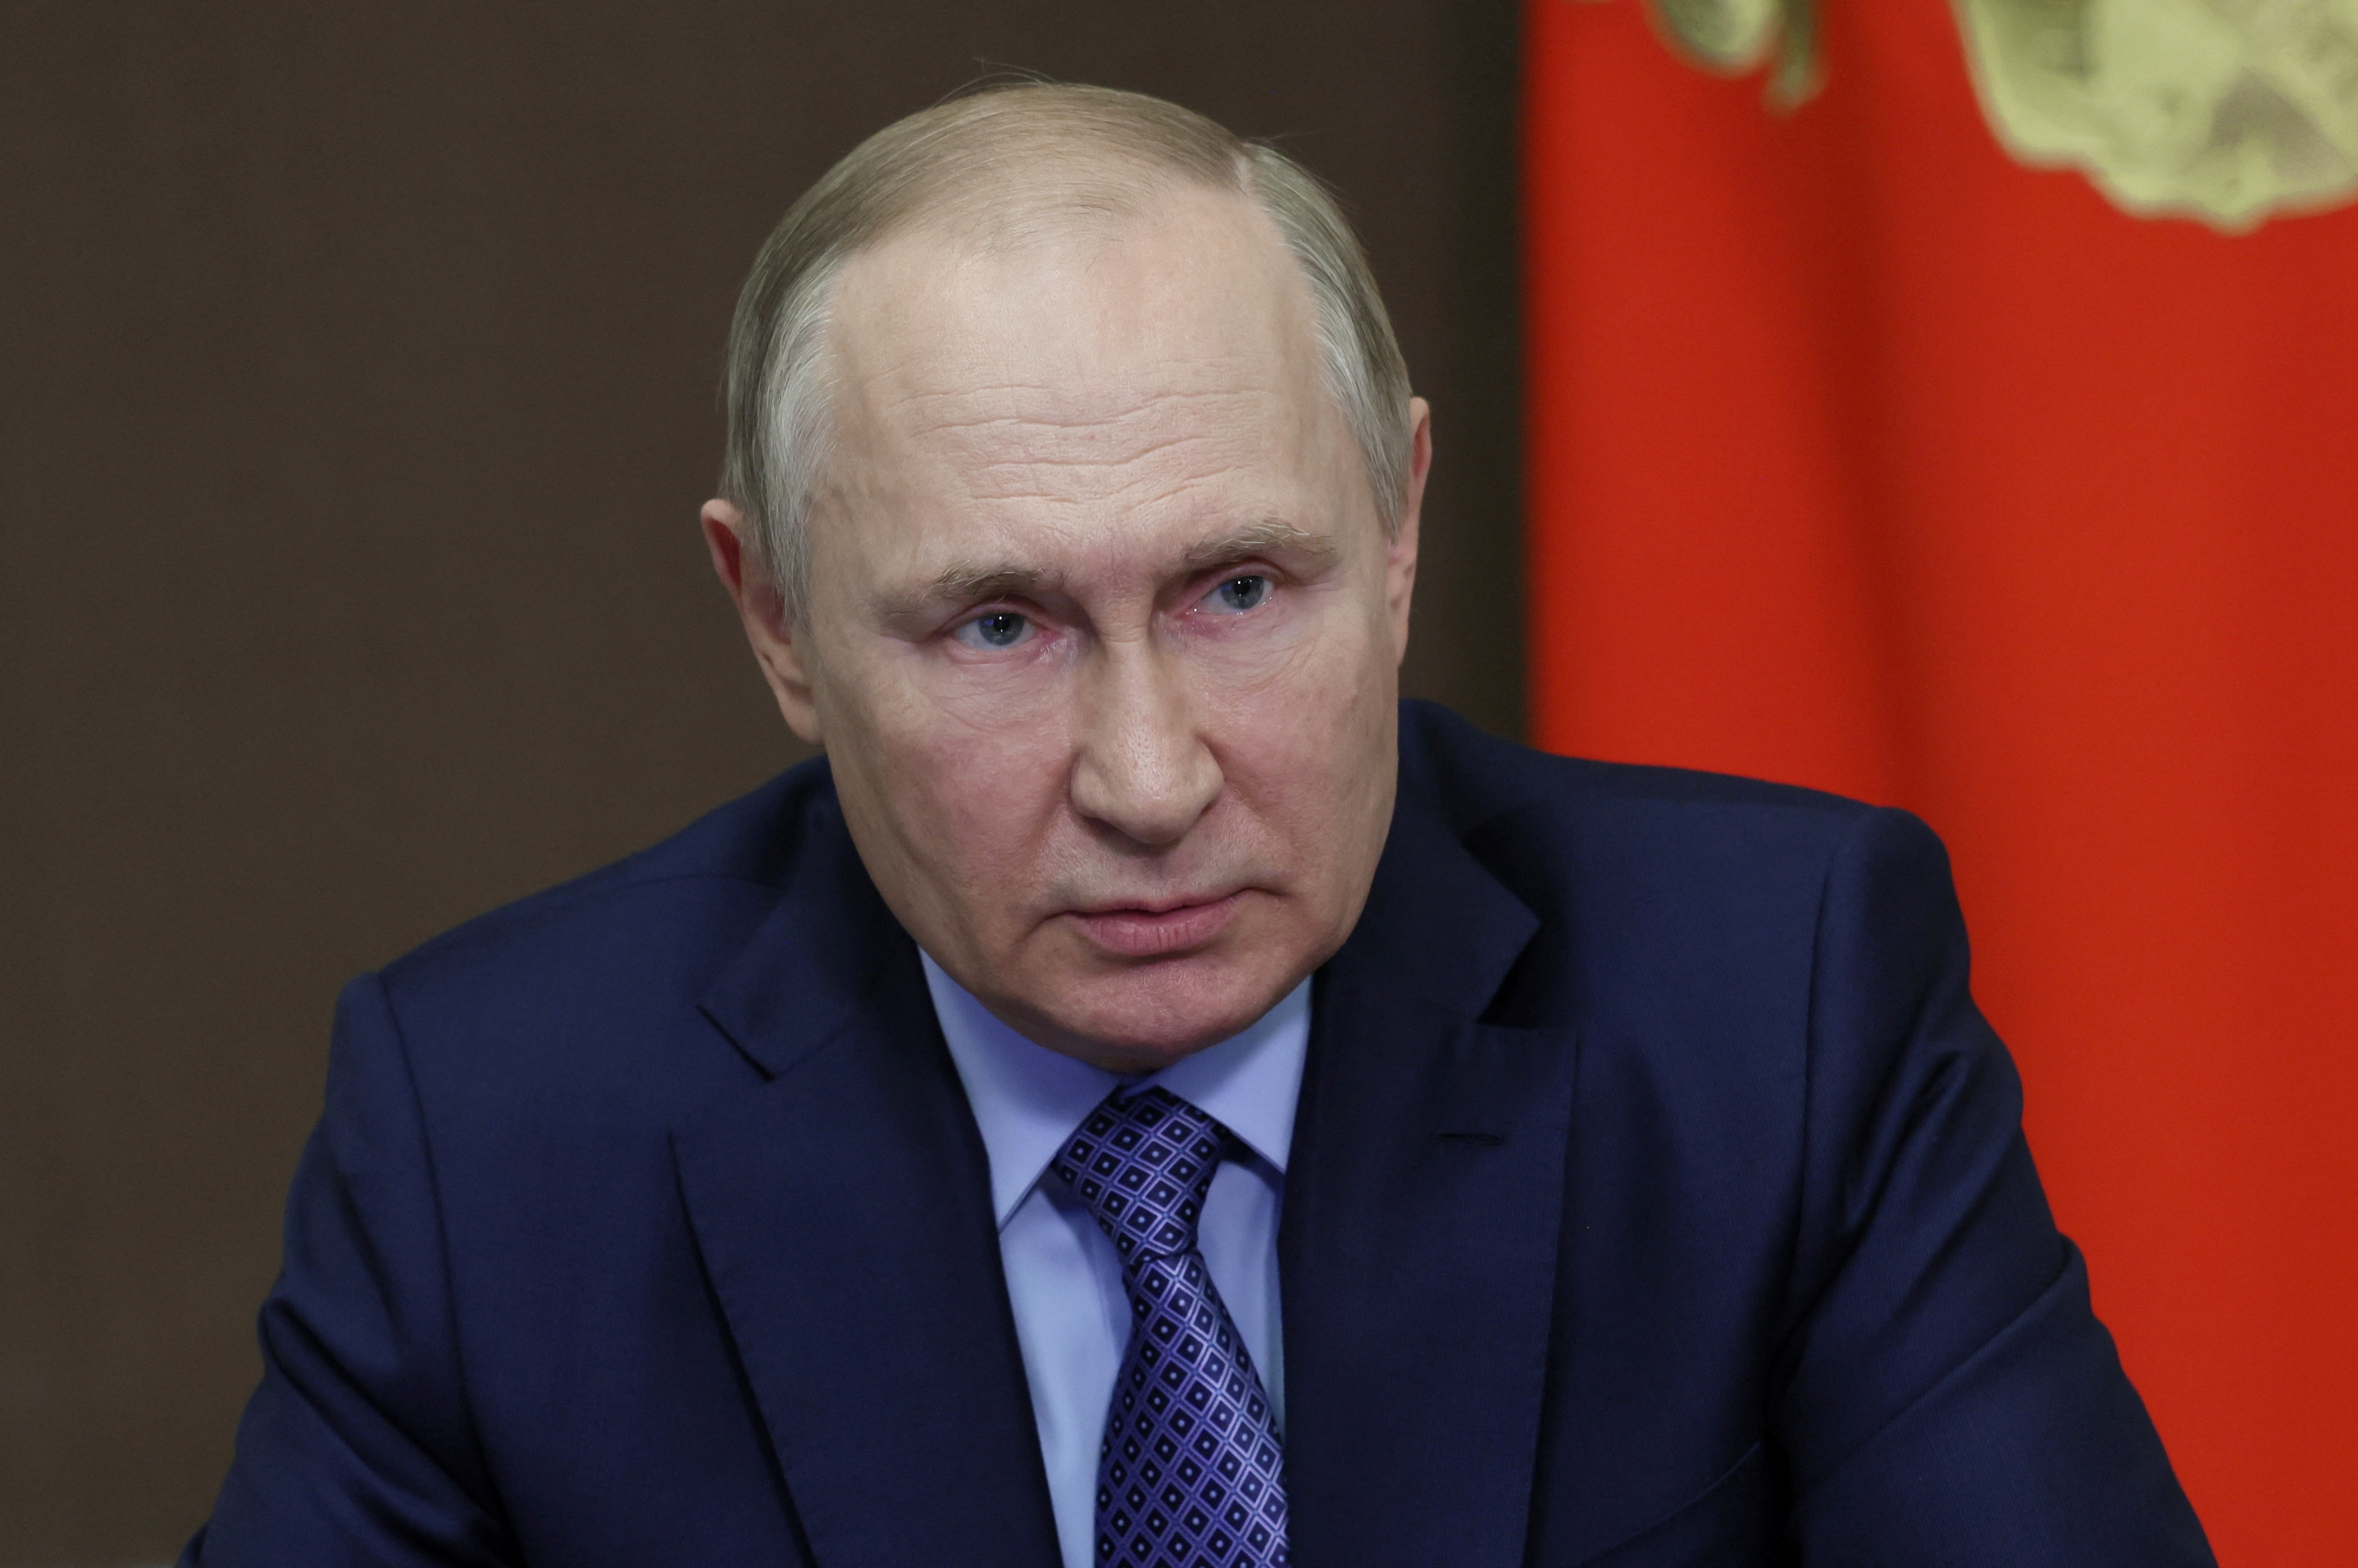 El presidente ruso, Vladimir Putin, preside una reunión con miembros del Consejo de Seguridad este miércoles (Sputnik/Mikhail Metzel/REUTERS)